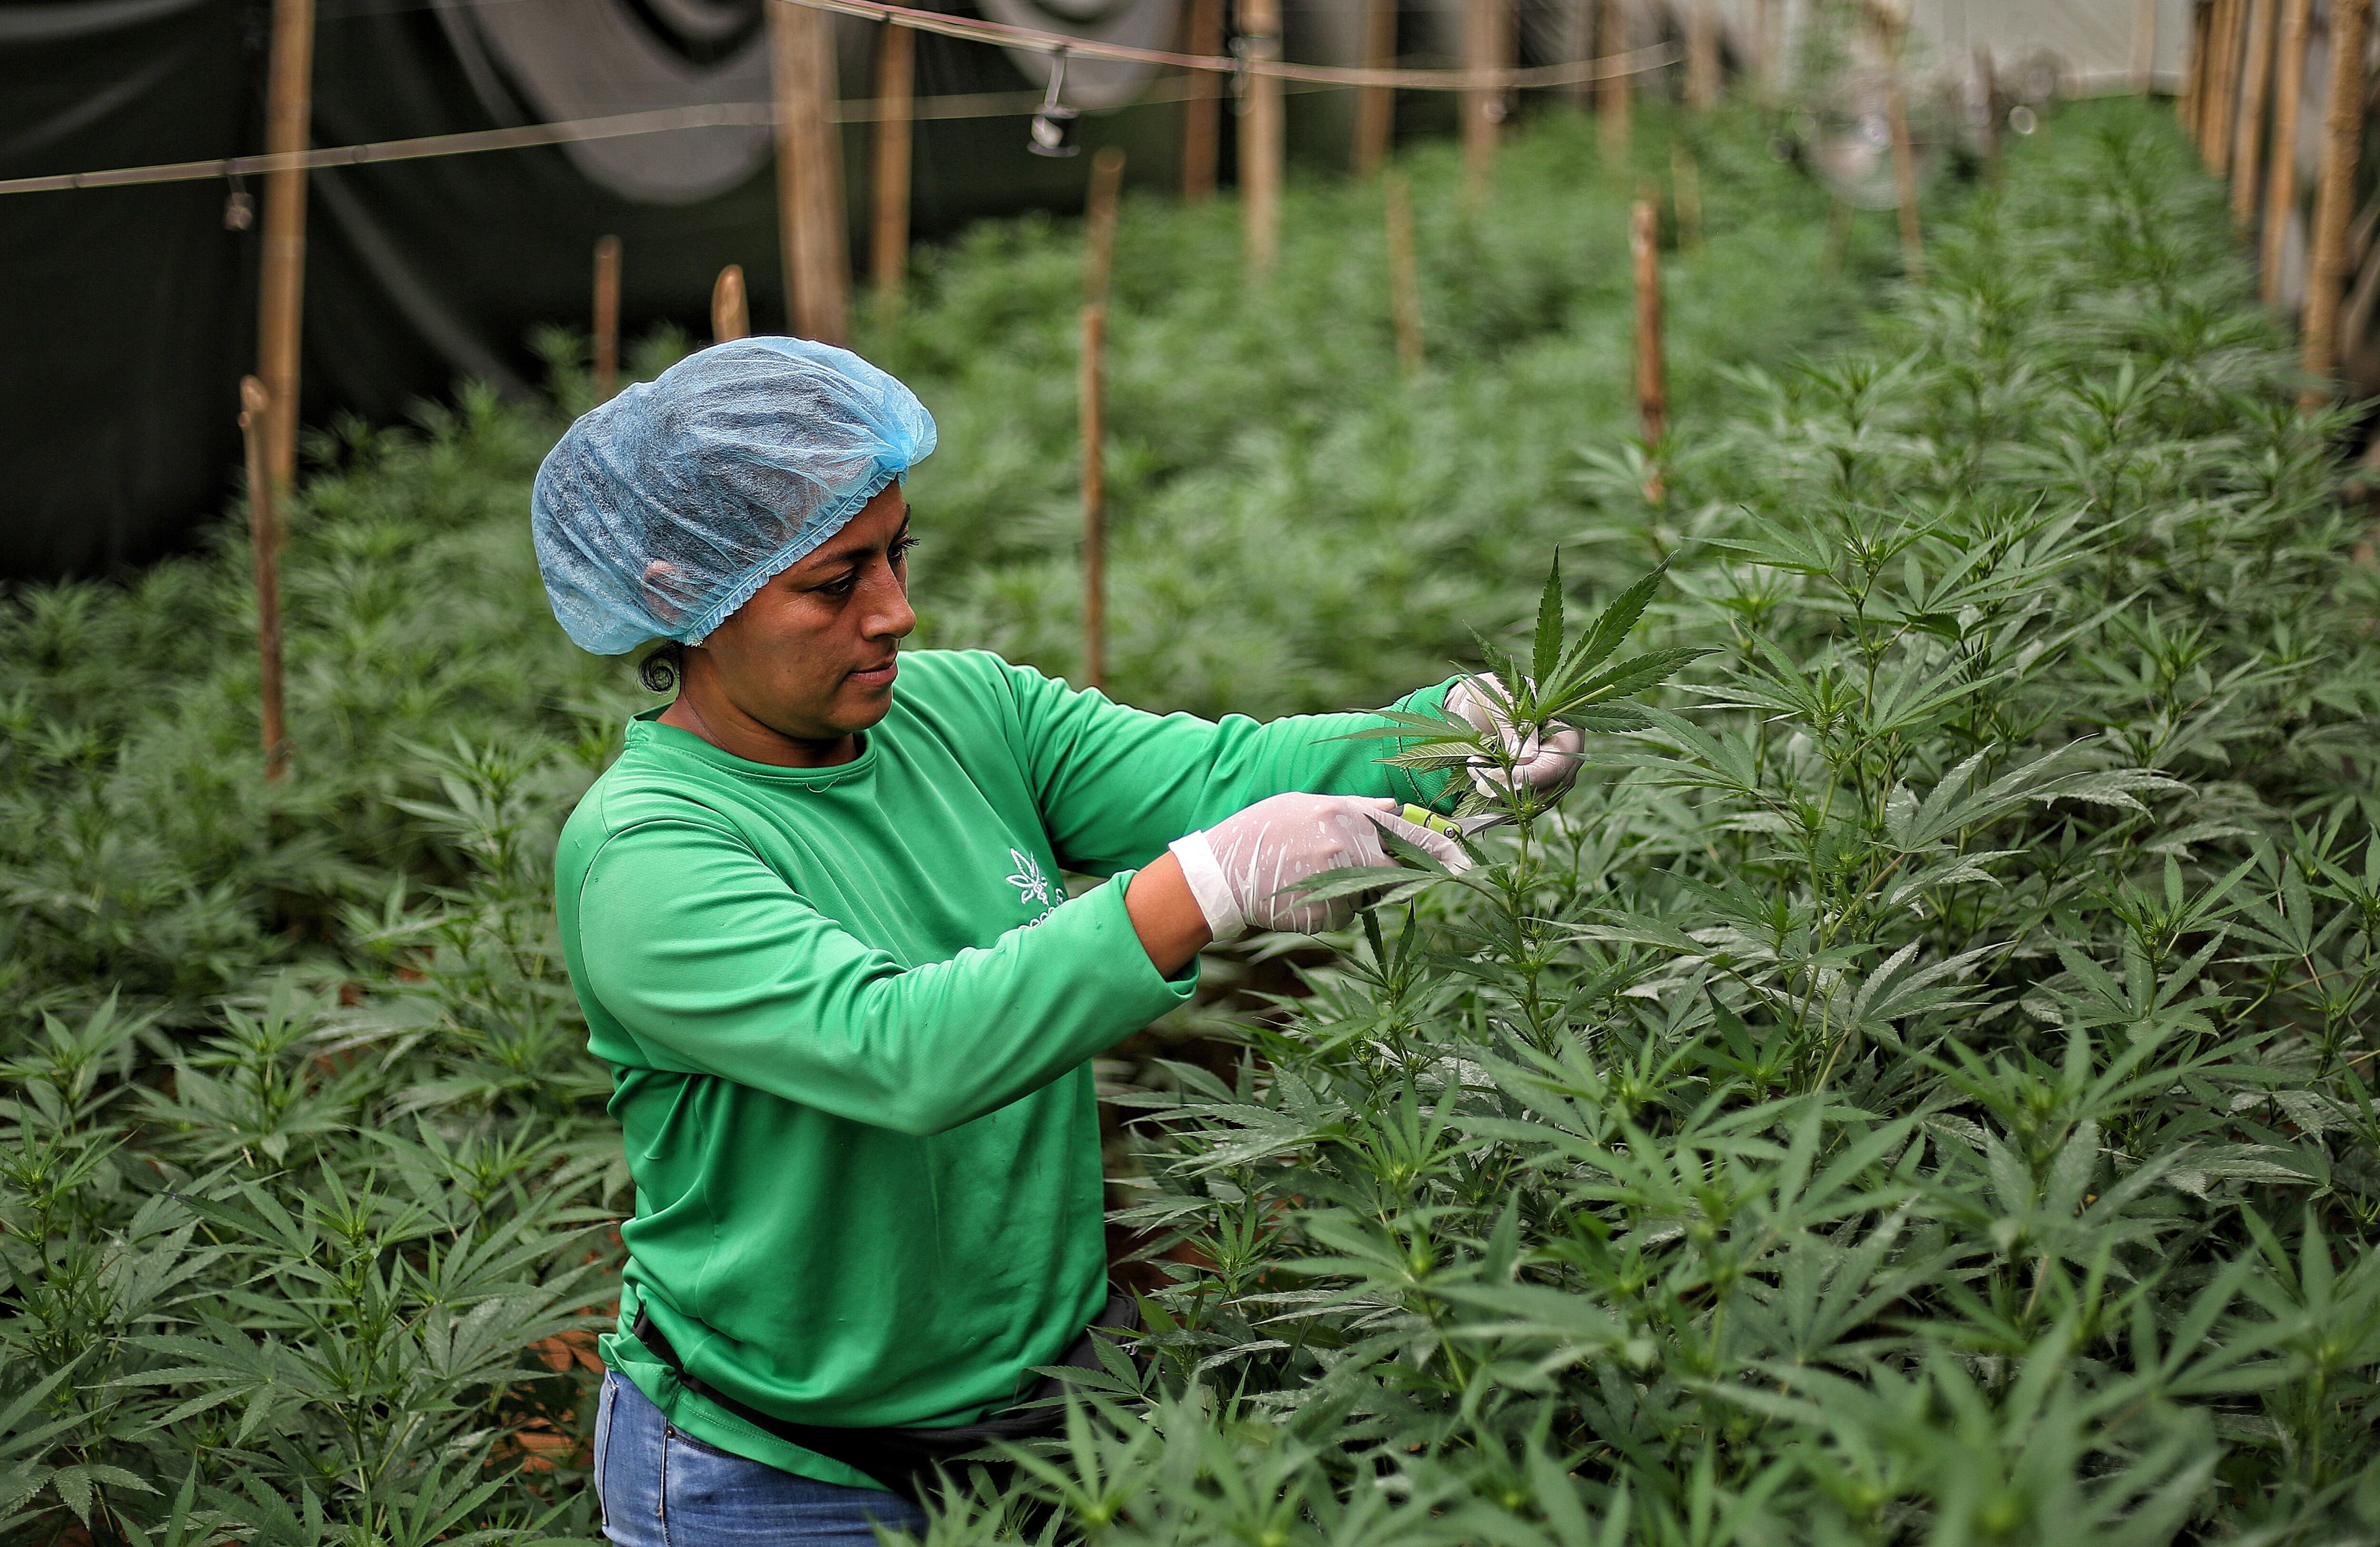 La medida, anticipada para beneficiar especialmente la industria del cannabis medicinal, podría llevar a una mayor inversión en investigación científica y desarrollo de productos en Colombia - crédito Mario Baos/EFE